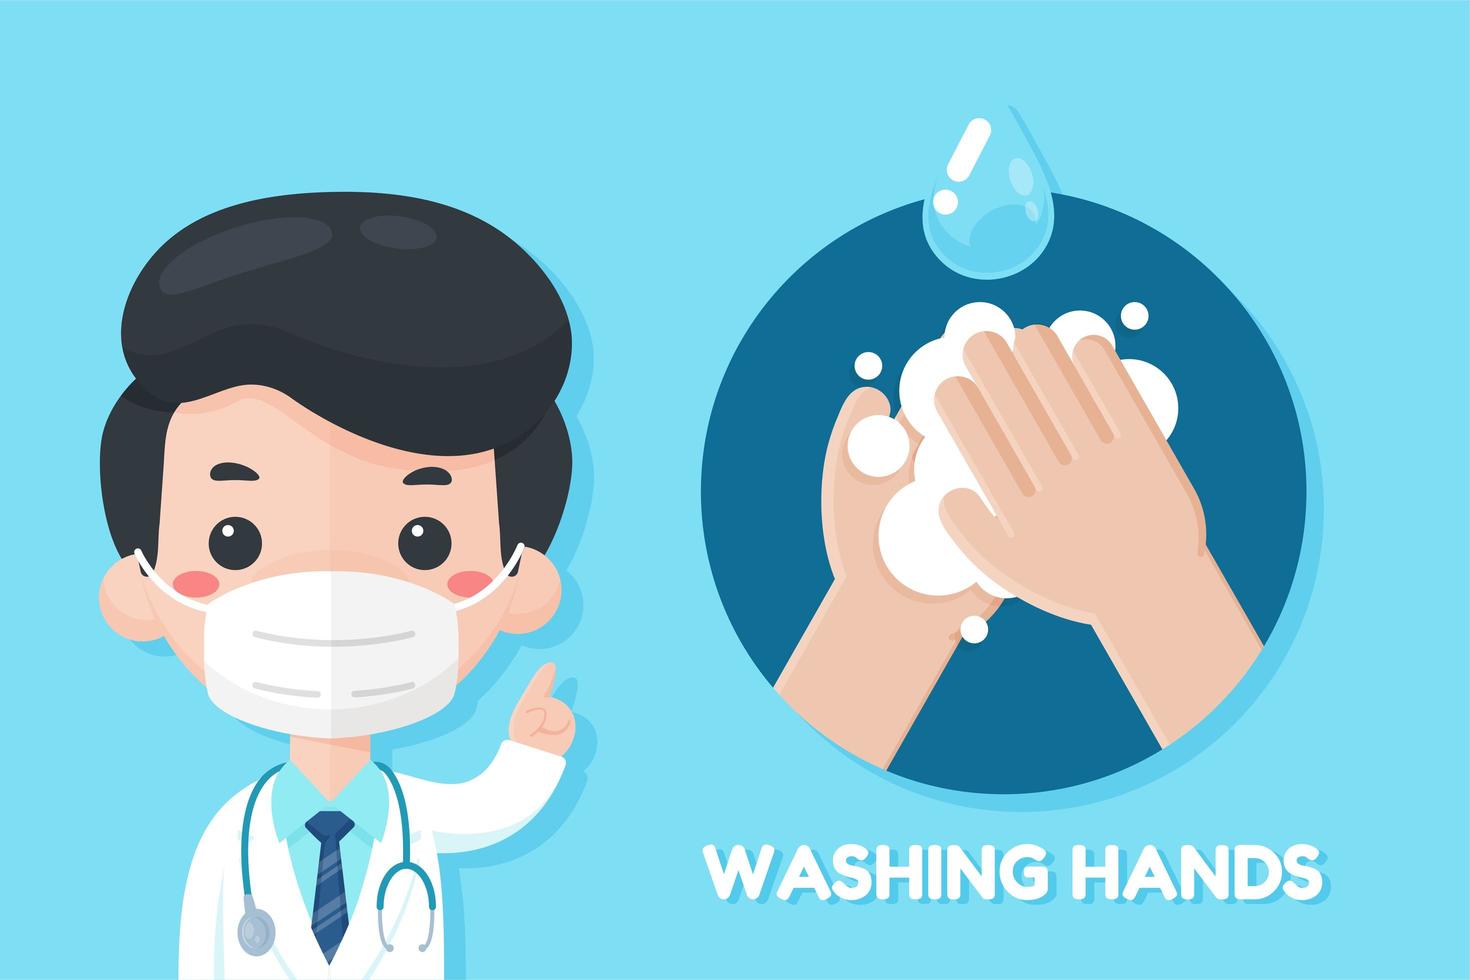 médico de dibujos animados que recomienda lavarse las manos vector